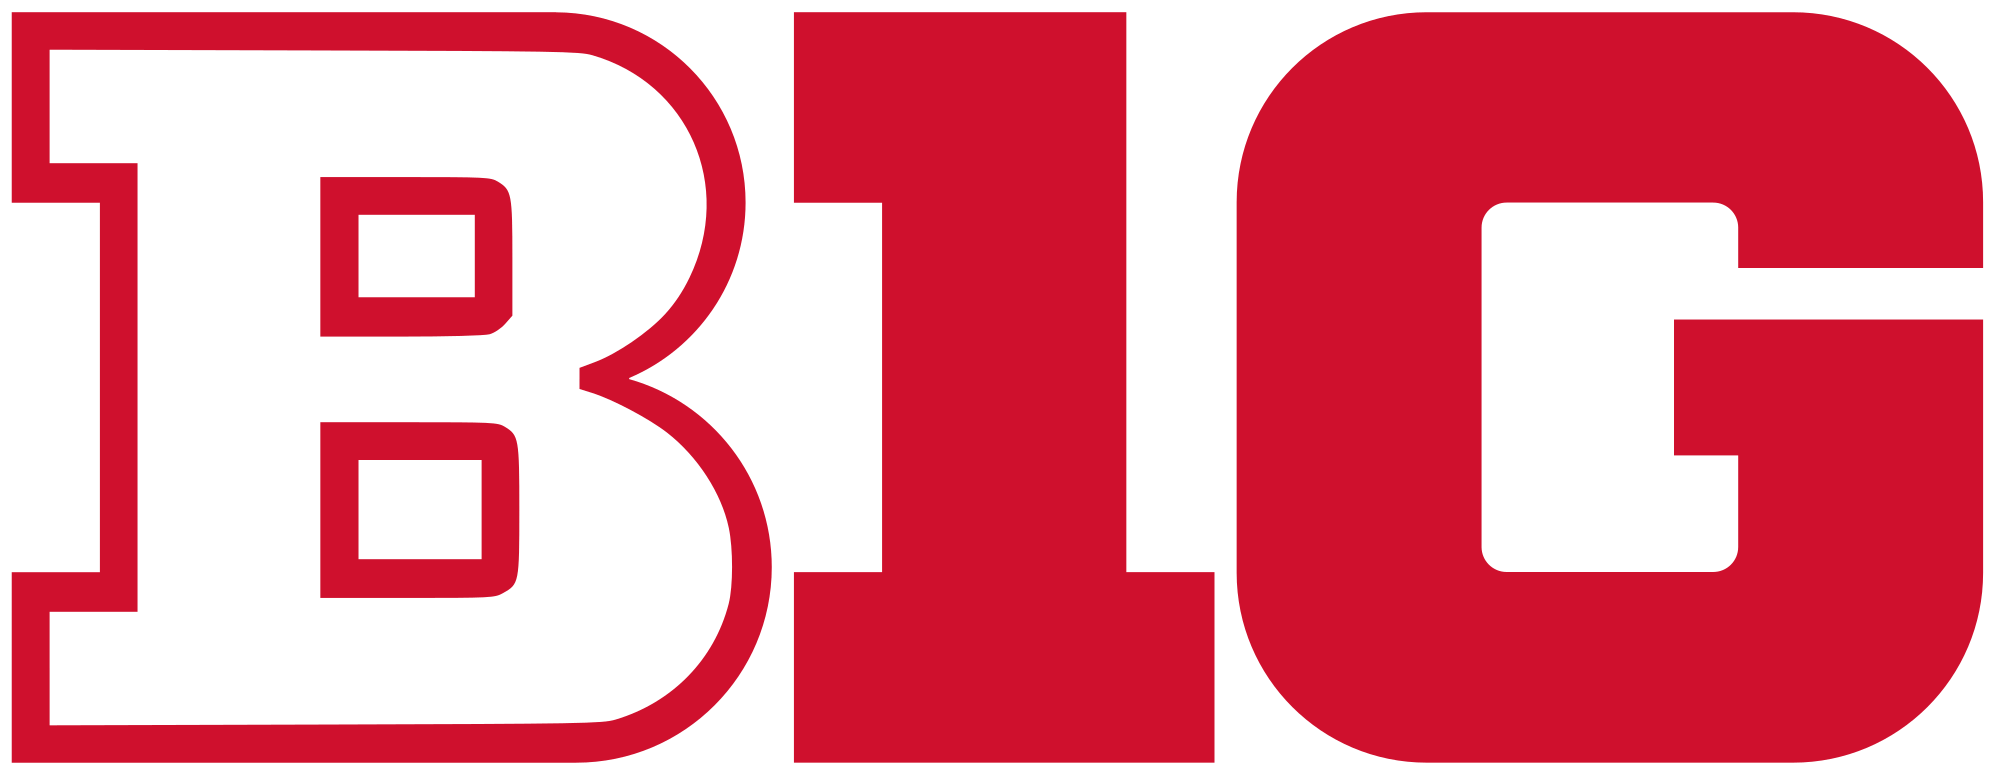 Rutgers Logo - Big Ten logo in Rutgers colors.svg